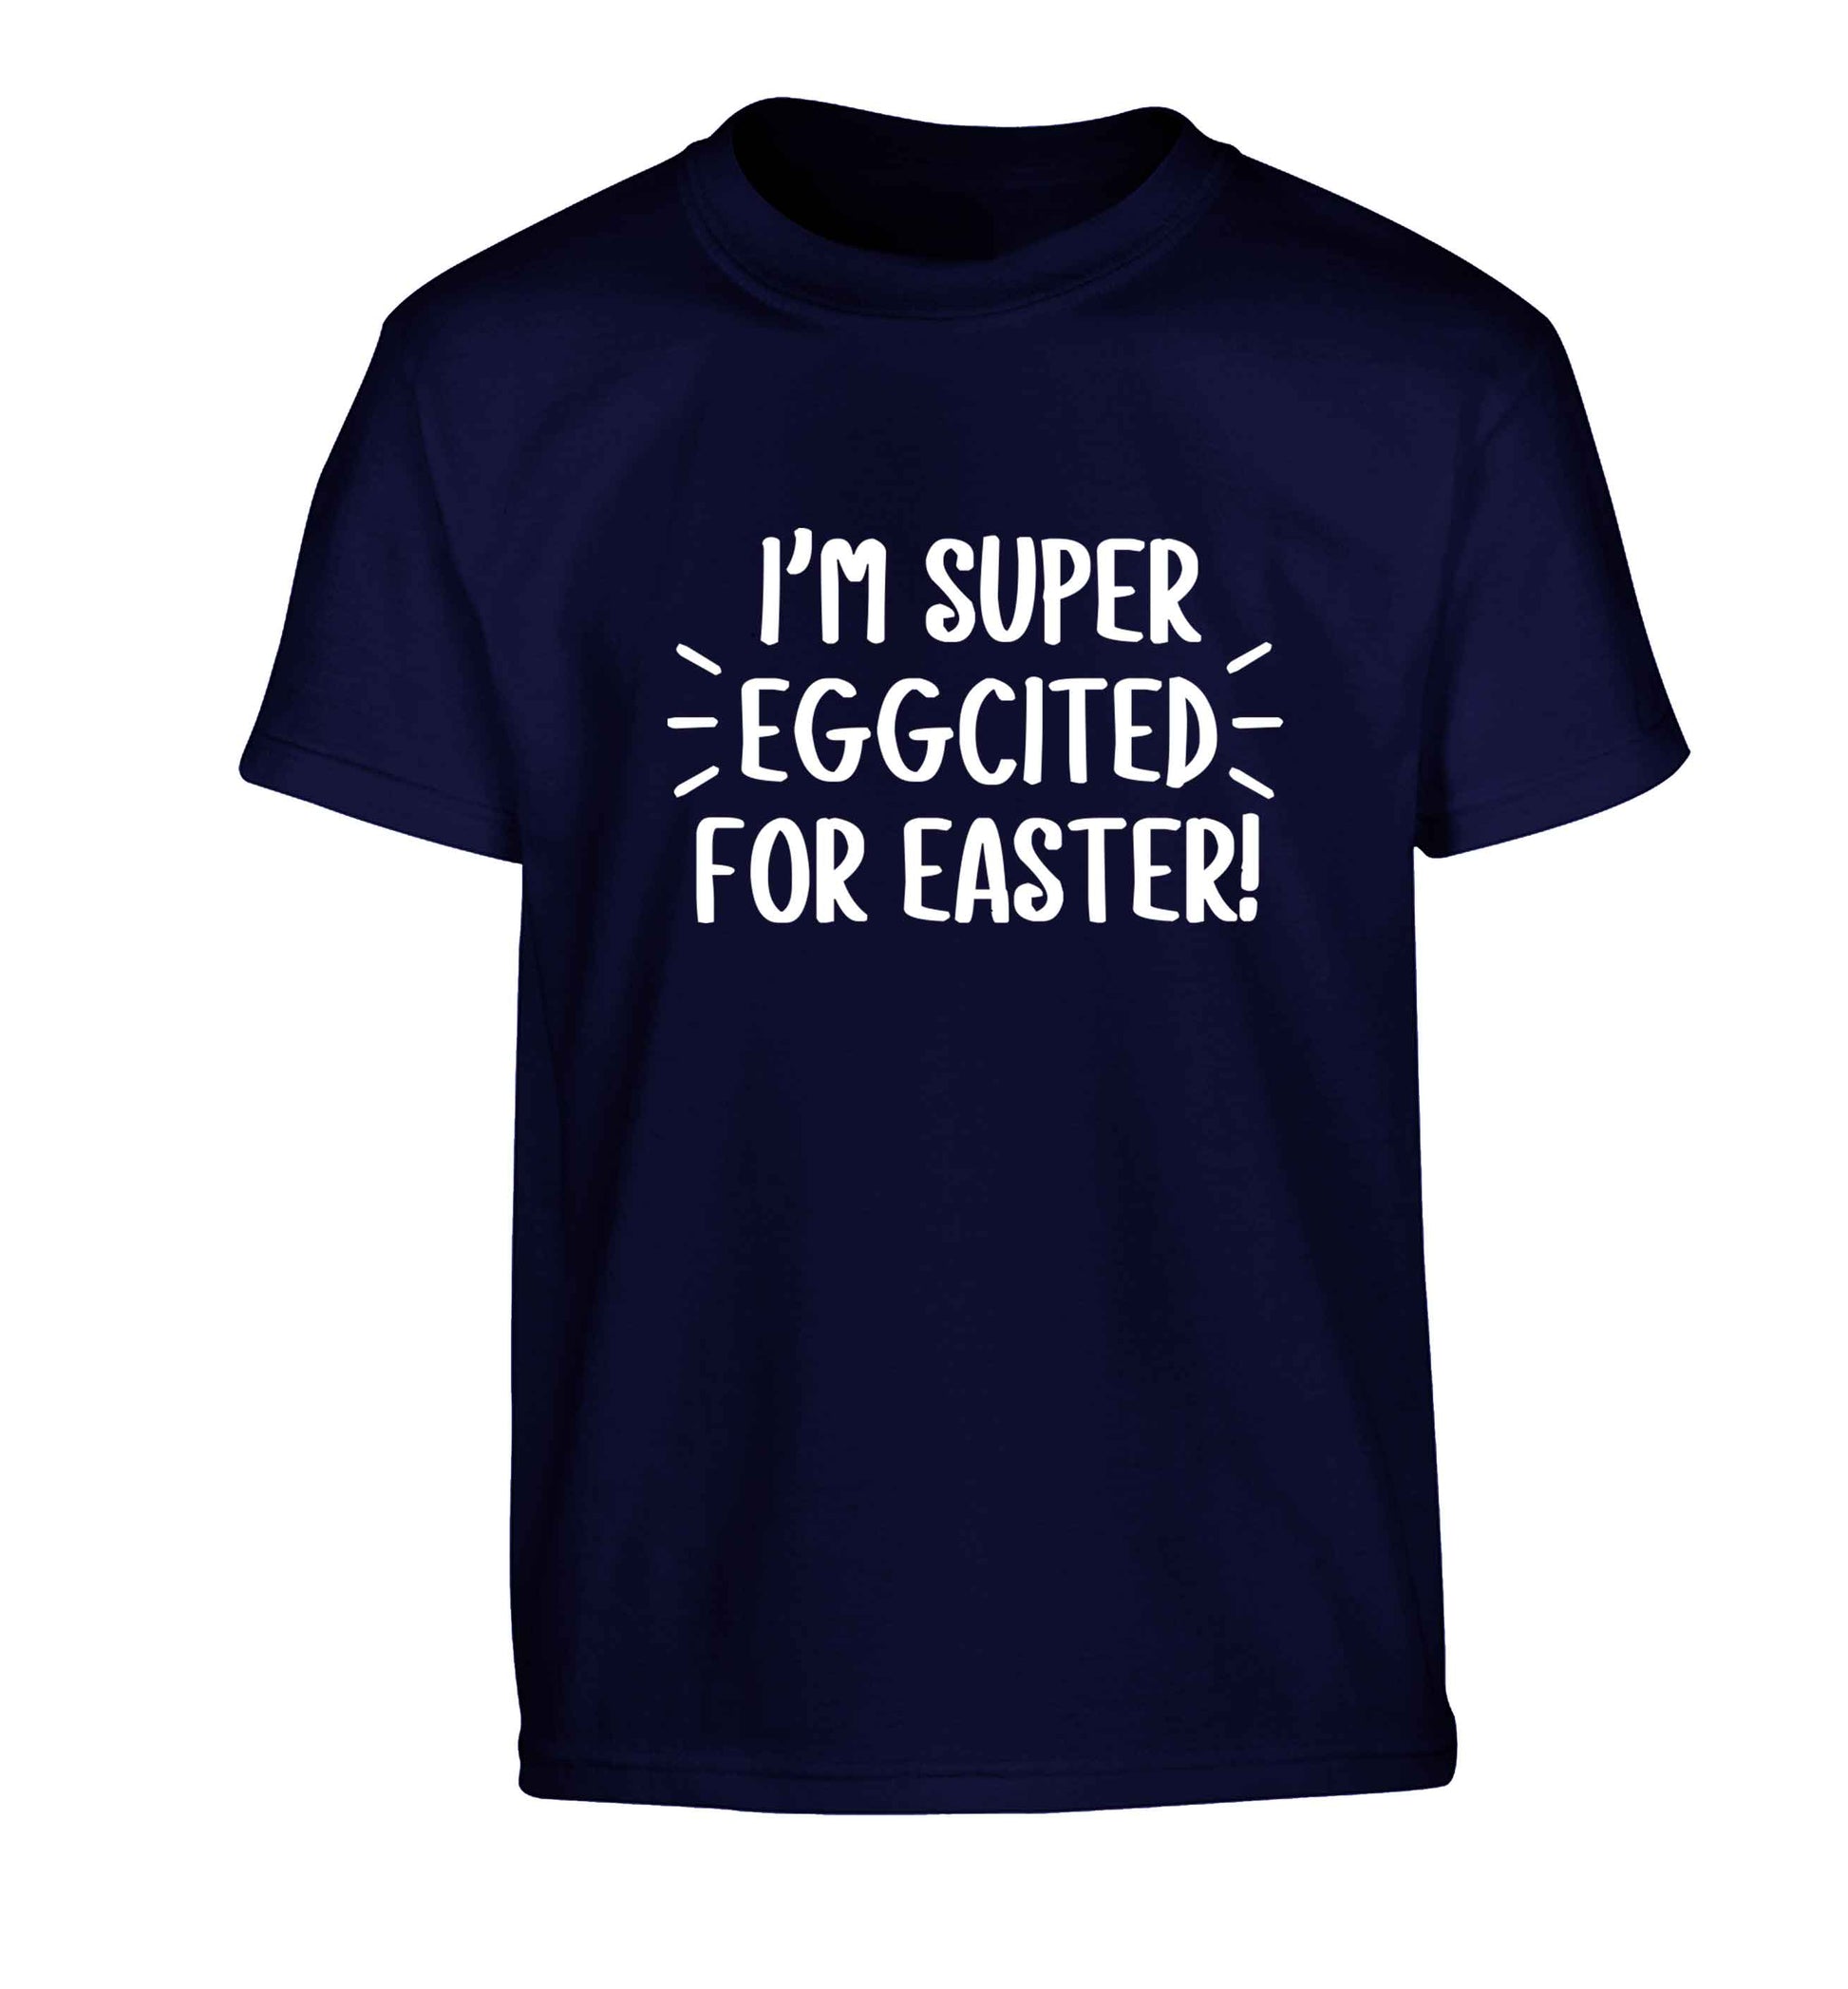 I'm super eggcited for Easter Children's navy Tshirt 12-13 Years